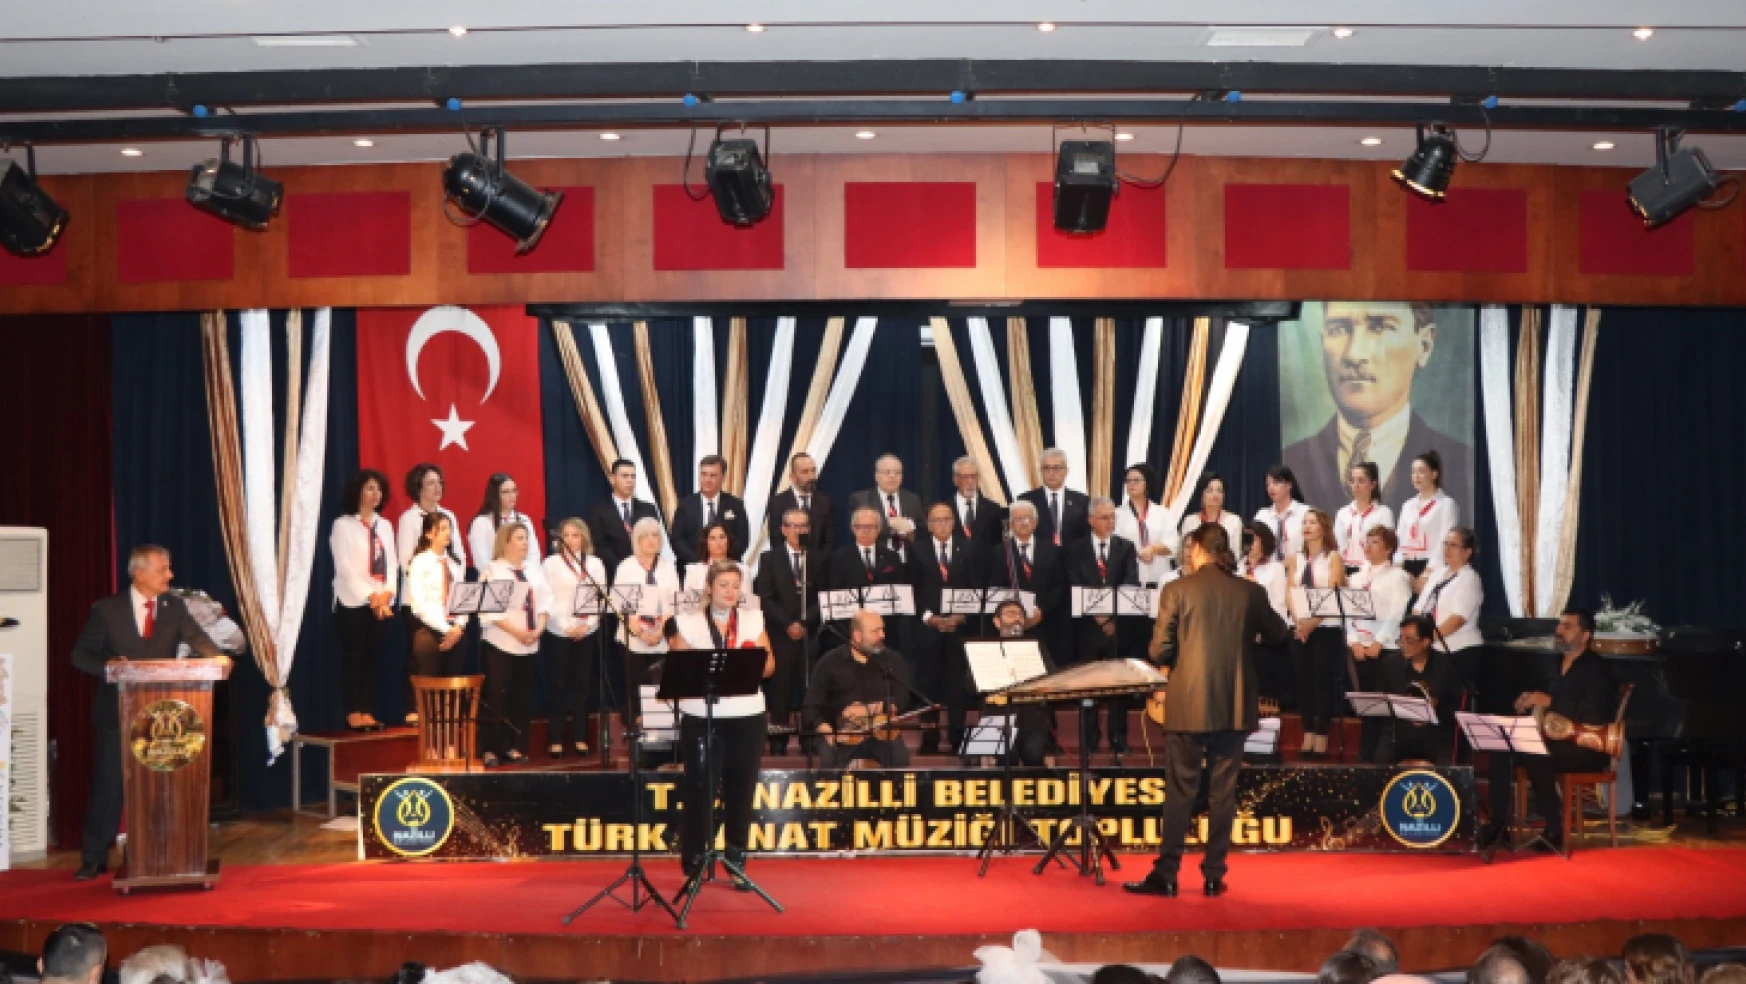 Sümerbank Özel Konseri Nazilli'de kulakların pasını sildi